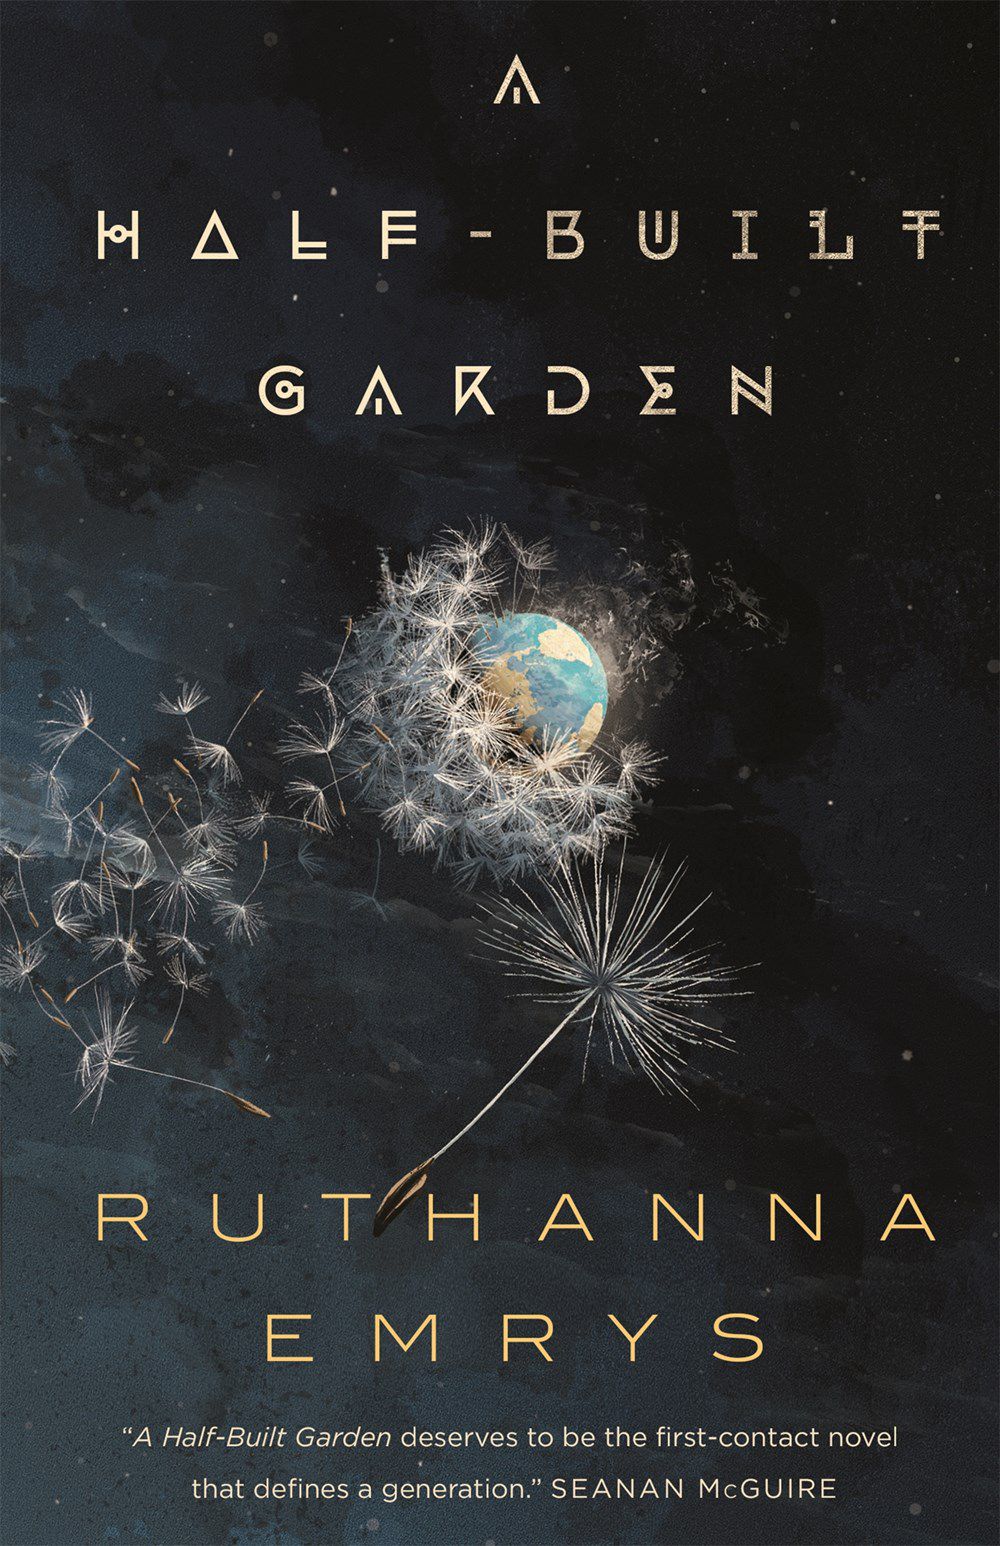 Immagine di copertina di A Half-Built Garden, che mostra la Terra in lontananza circondata da teste di semi di tarassaco.